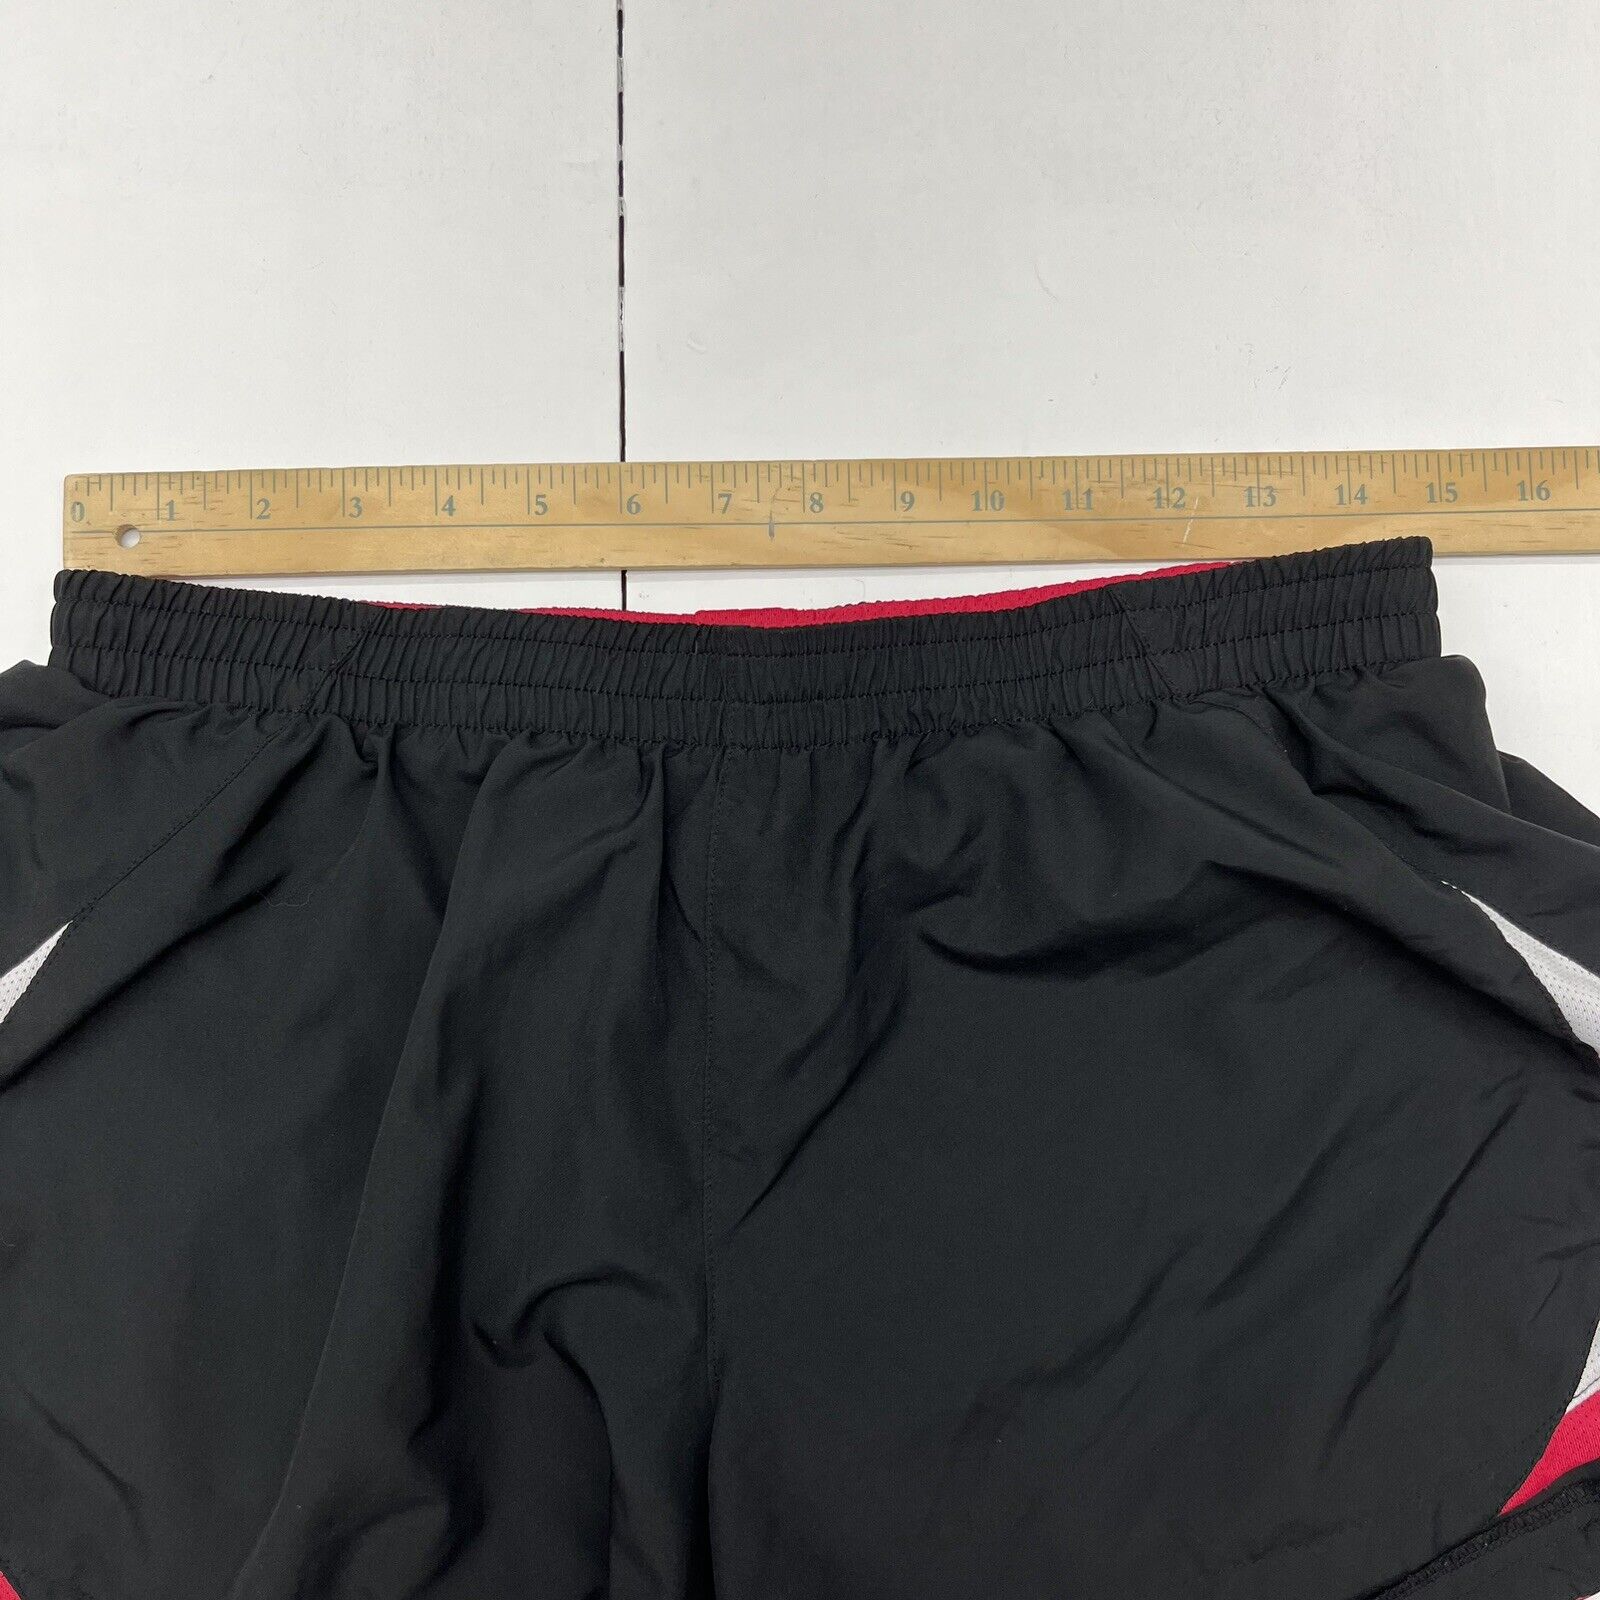 Nike Black / Hot Pink Performance Athletic Shorts Girls Size Large